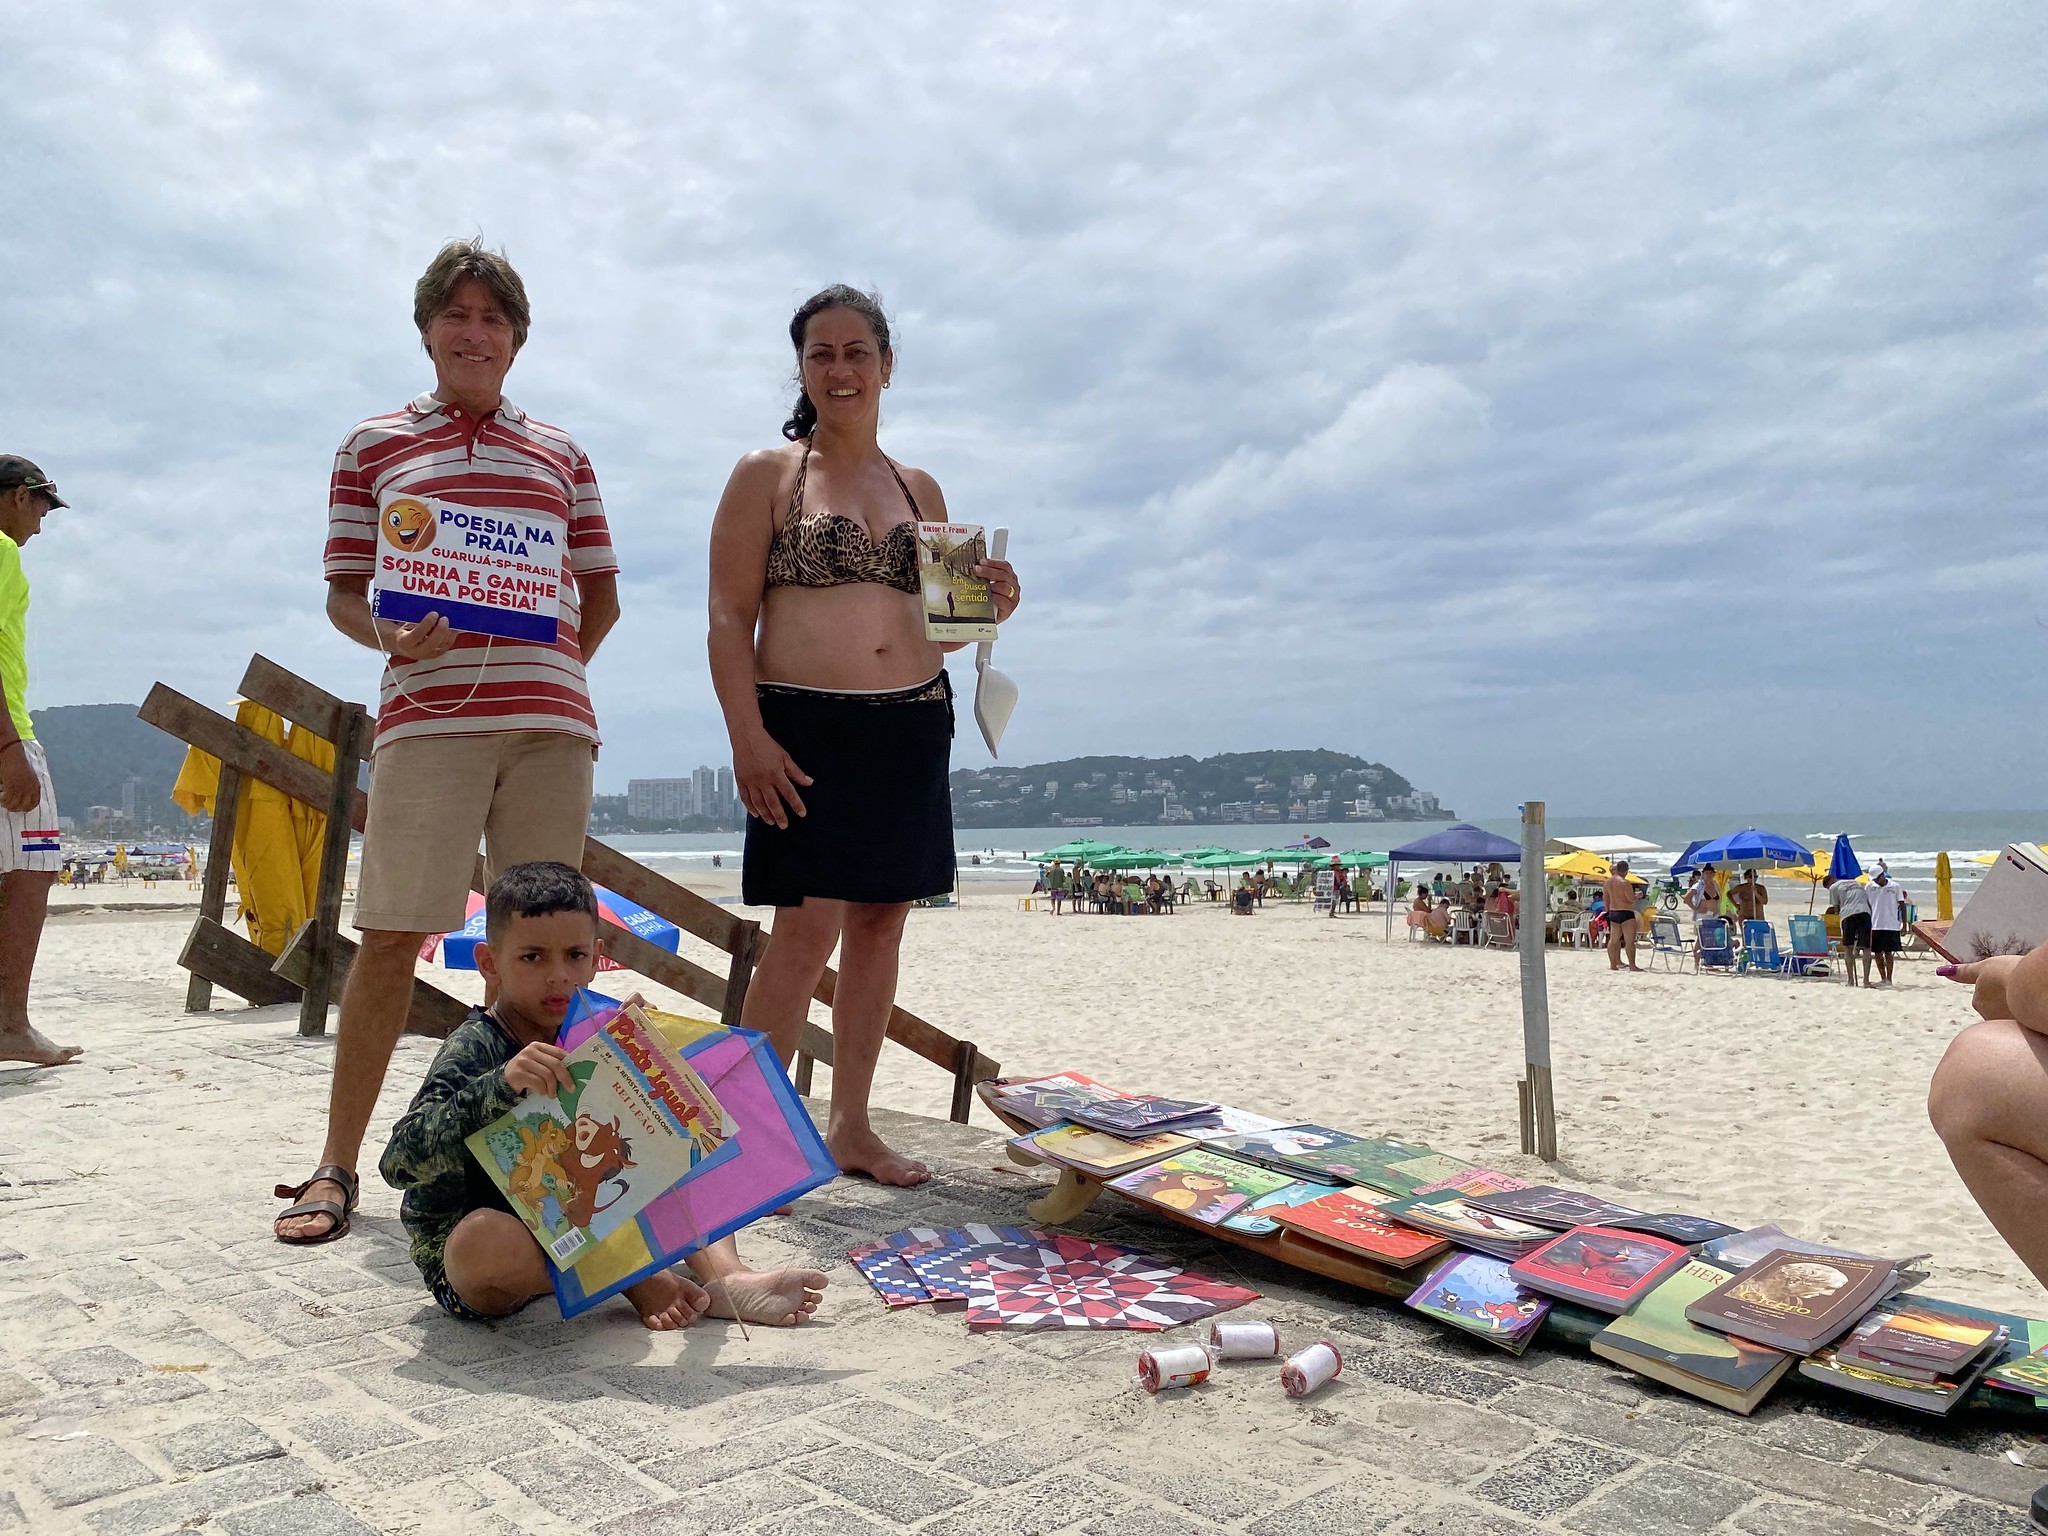 Homem distribui livros em troca de sorrisos após 'sonho revelador' e faz sucesso em praia do litoral de SP: 'empatia natural'